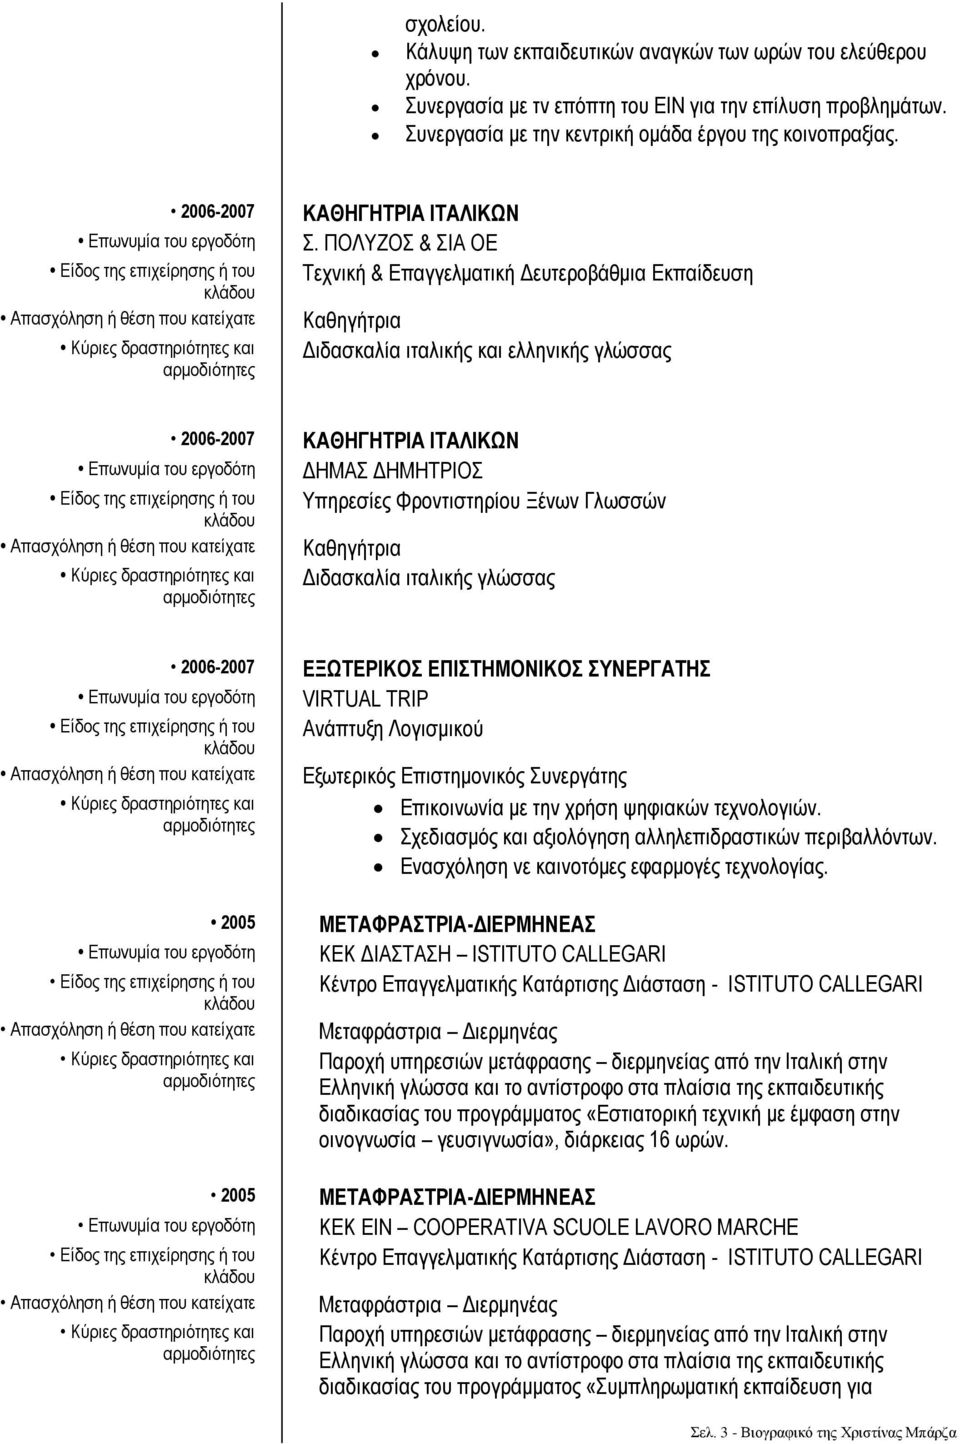 ΠΟΛΥΖΟΣ & ΣΙΑ ΟΕ Τεχνική & Επαγγελματική Δευτεροβάθμια Εκπαίδευση Διδασκαλία ιταλικής και ελληνικής γλώσσας 2006-2007 ΔΗΜΑΣ ΔΗΜΗΤΡΙΟΣ Υπηρεσίες Φροντιστηρίου Ξένων Γλωσσών Διδασκαλία ιταλικής γλώσσας